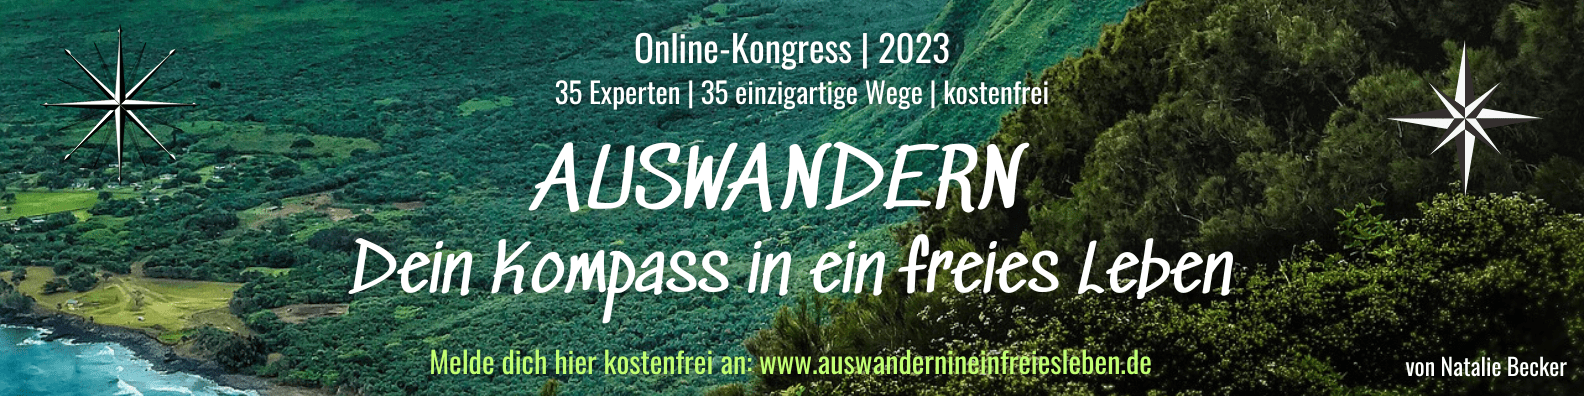 News zum Online-Kongress 2023: AUSWANDERN - Dein Kompass in ein freies Leben. Melde dich hier kostenfrei an: www.auswandernineinfreiesleben.de